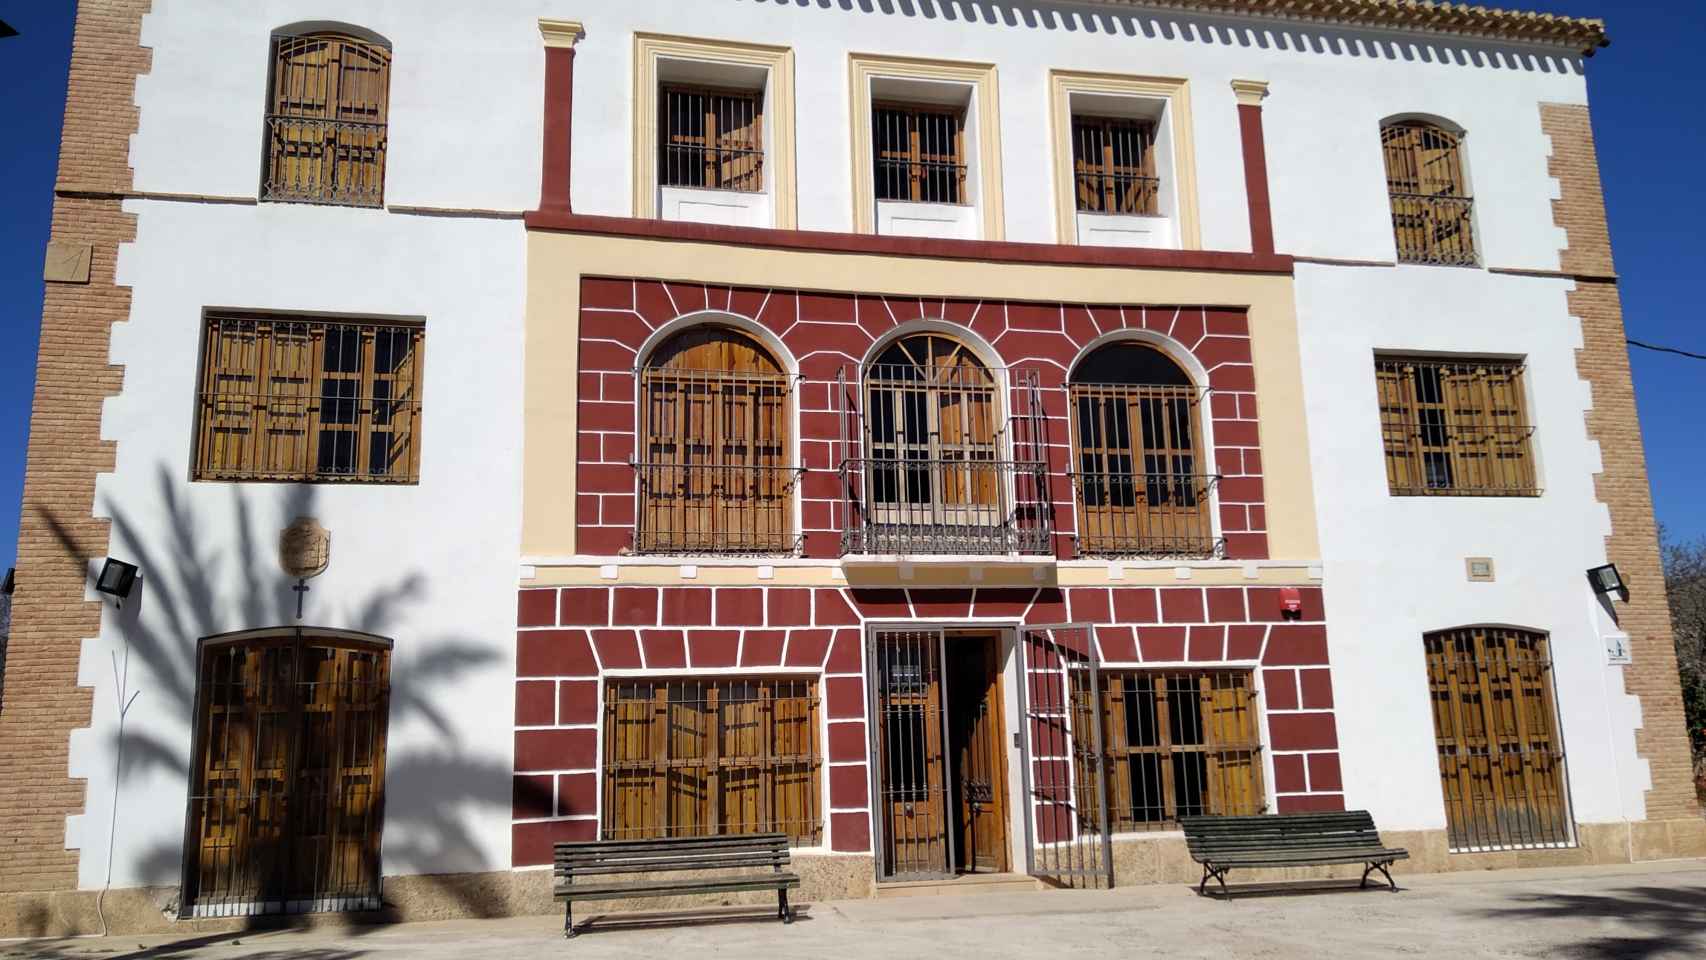 Foto del centro de protección de menores de Alhama de Murcia, conocido como la Casa del Ral.